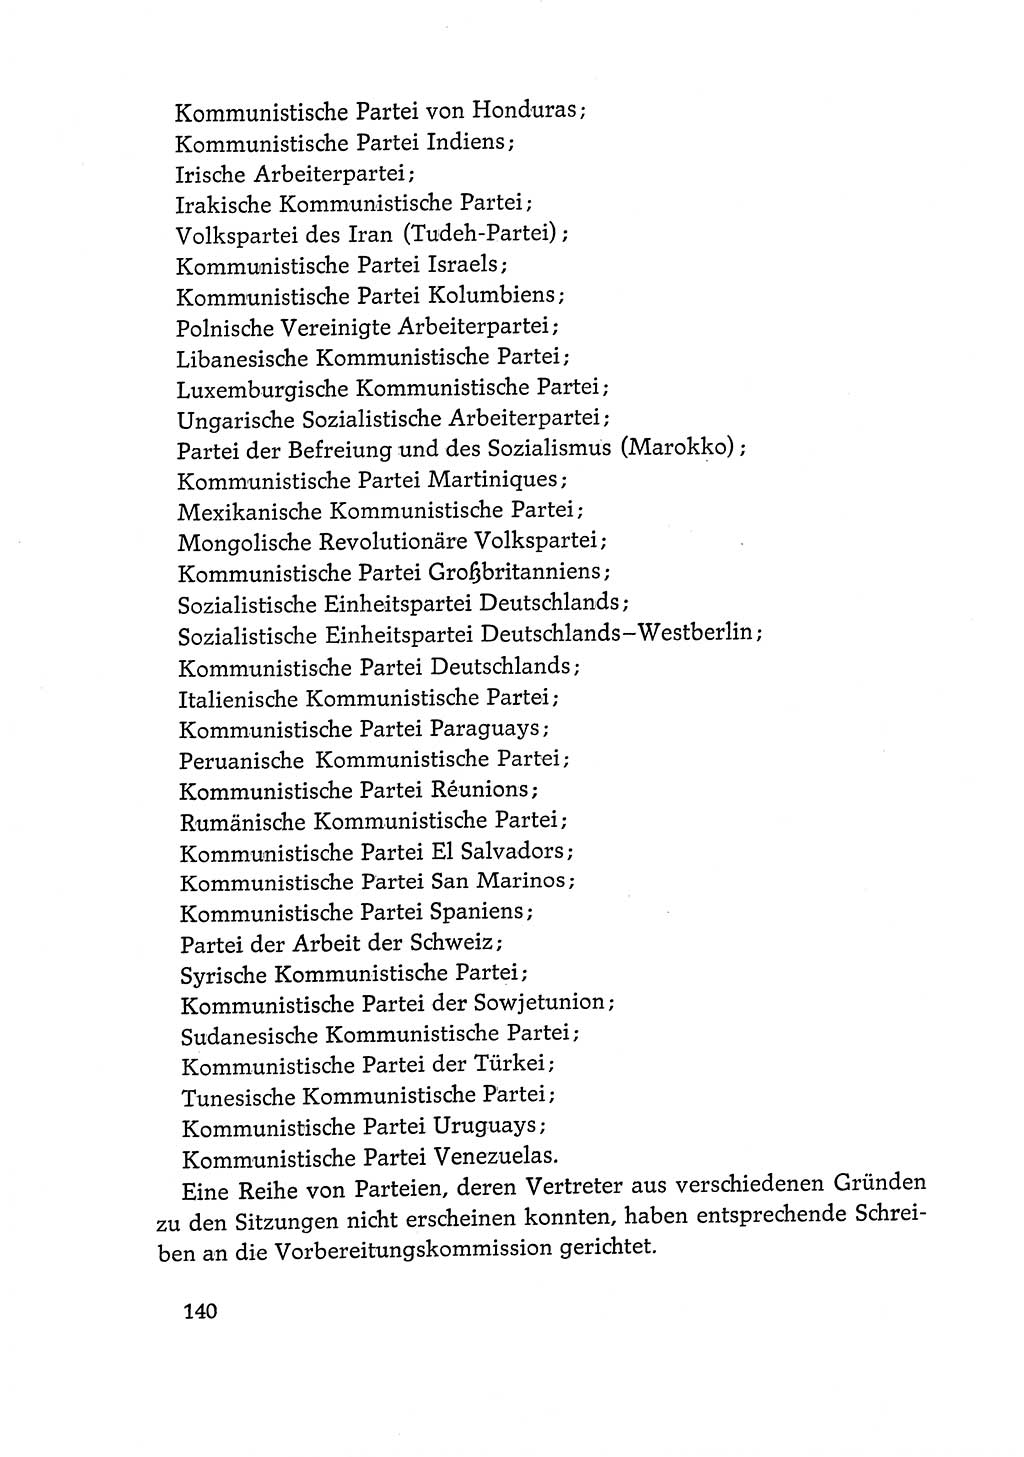 Dokumente der Sozialistischen Einheitspartei Deutschlands (SED) [Deutsche Demokratische Republik (DDR)] 1968-1969, Seite 140 (Dok. SED DDR 1968-1969, S. 140)